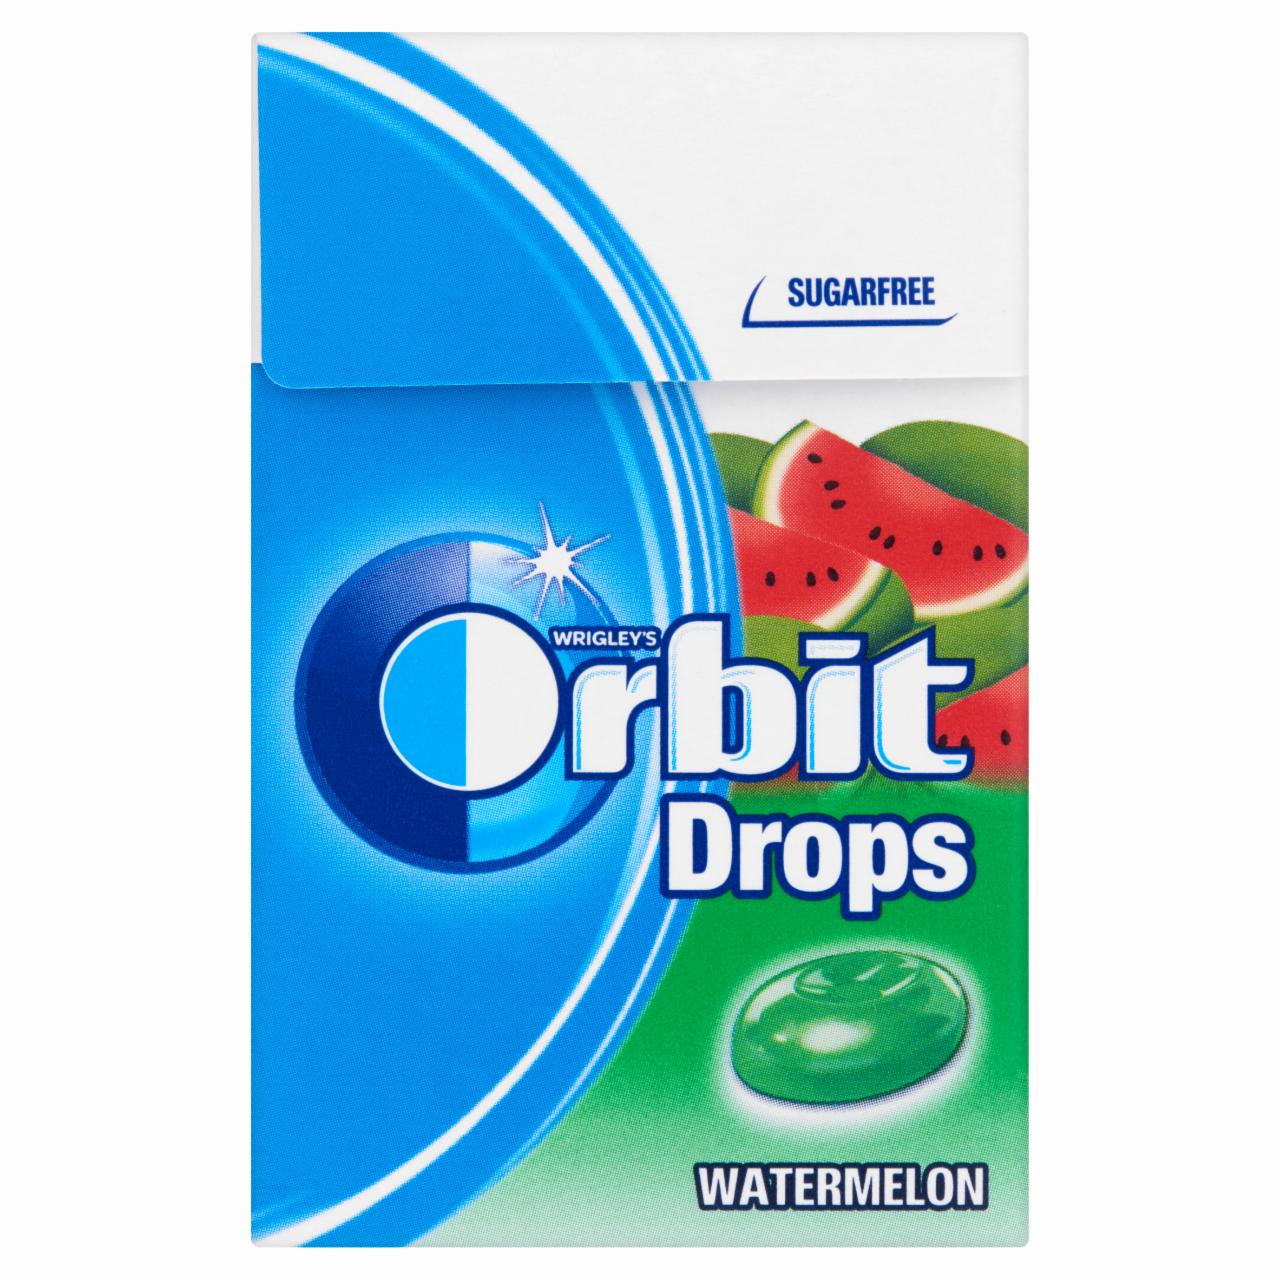 Képek - Orbit Drops Watermelon cukormentes cukorka édesítőszerrel 33 g